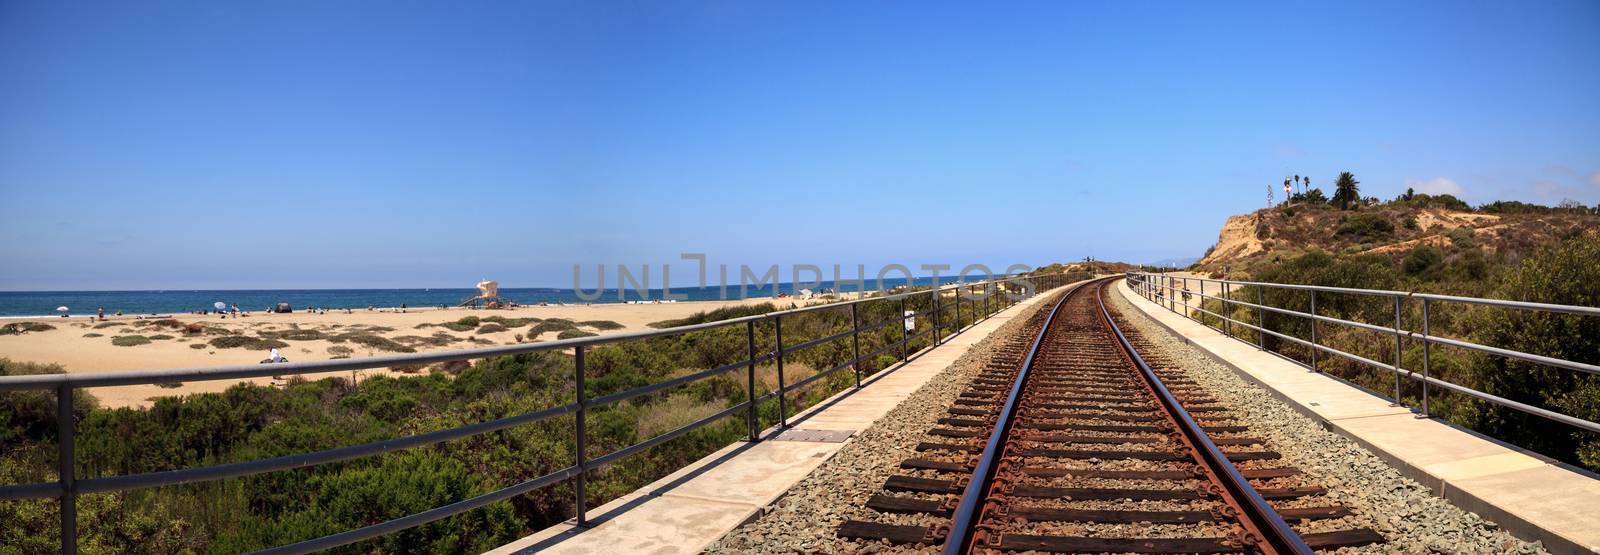 Train tracks run through San Clemente State Beach by steffstarr